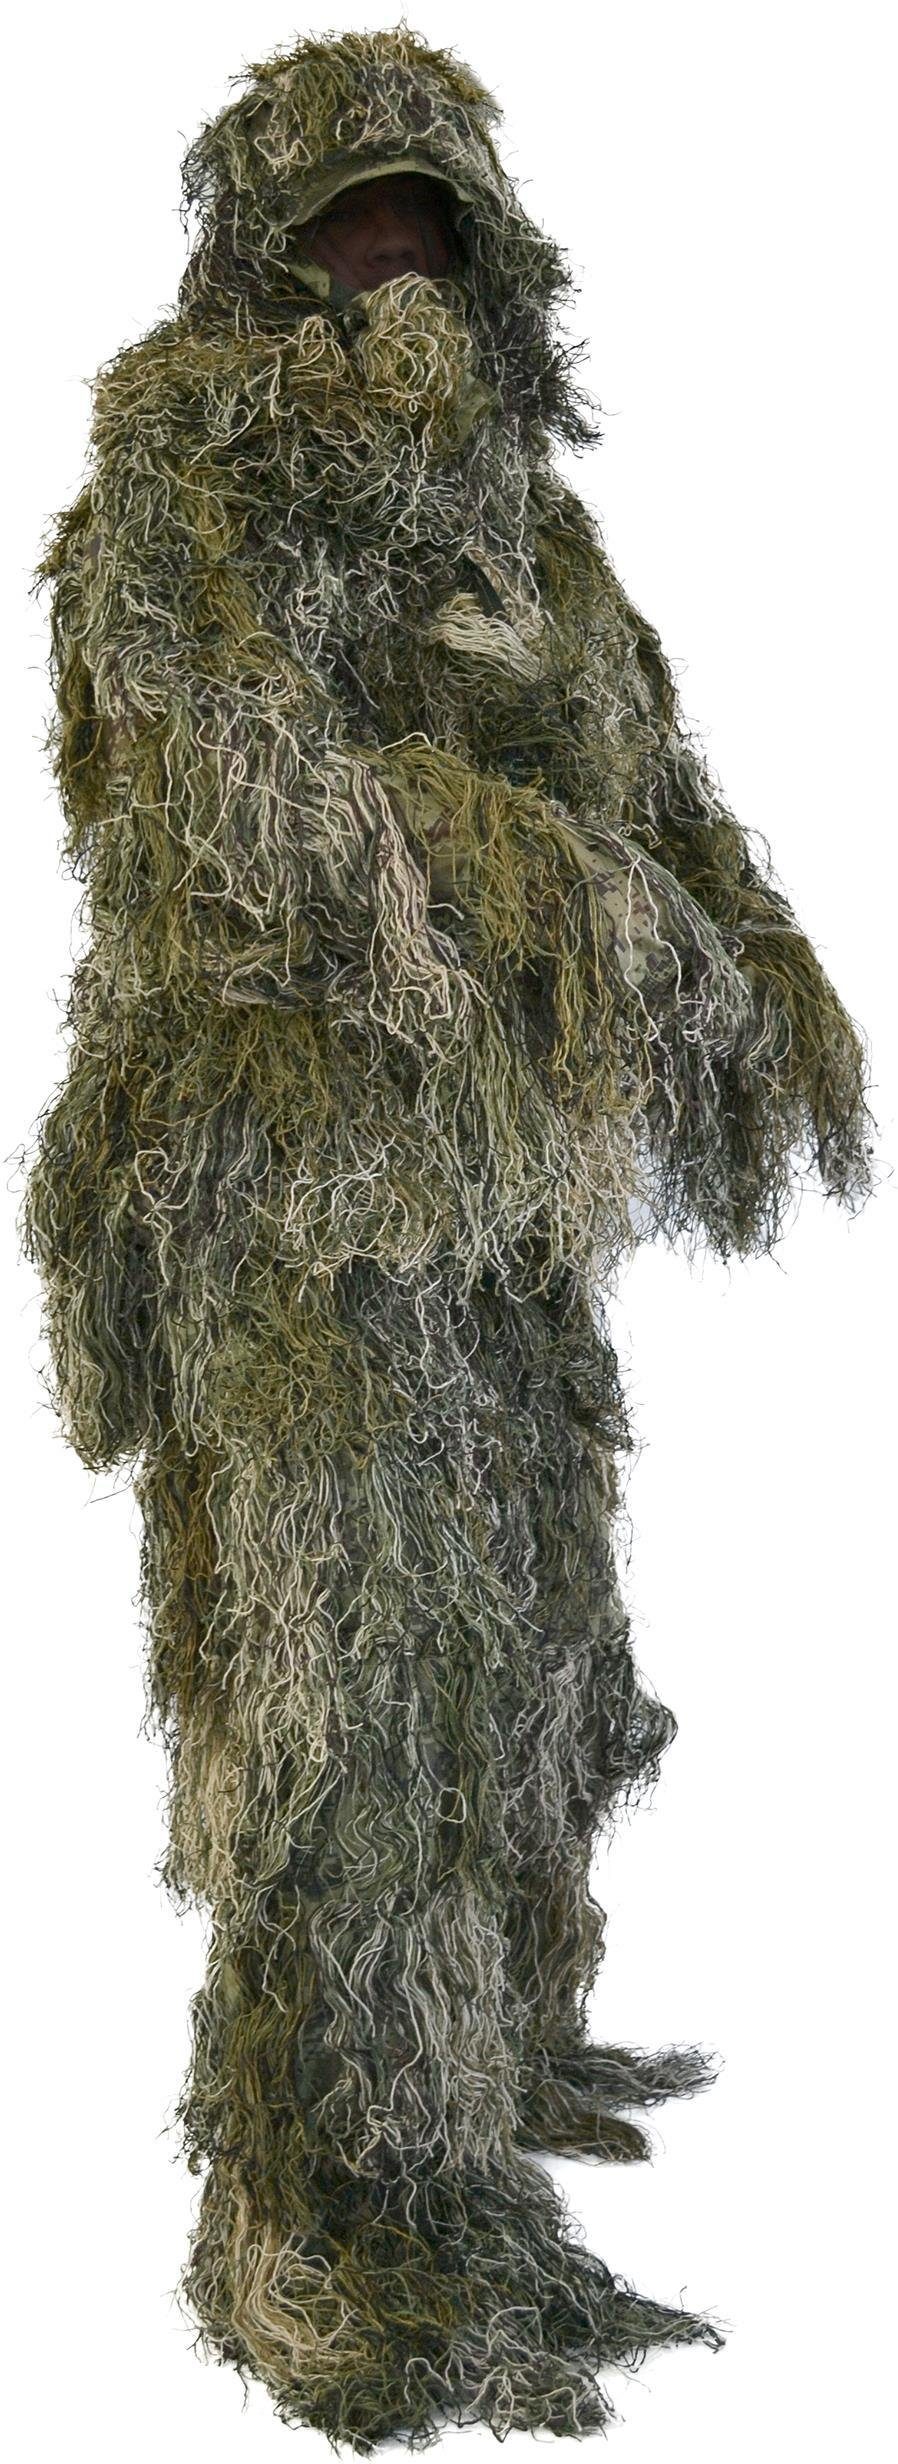 normani Monster-Kostüm »Tarnanzug 4-teilig Ghillie Suit«,  Scharfschützen-Tarnung Paintball-Outfit bestehend aus Jacke, Hose, Gewehr-  und Kopfbedeckung inkl Tragetasche online kaufen | OTTO